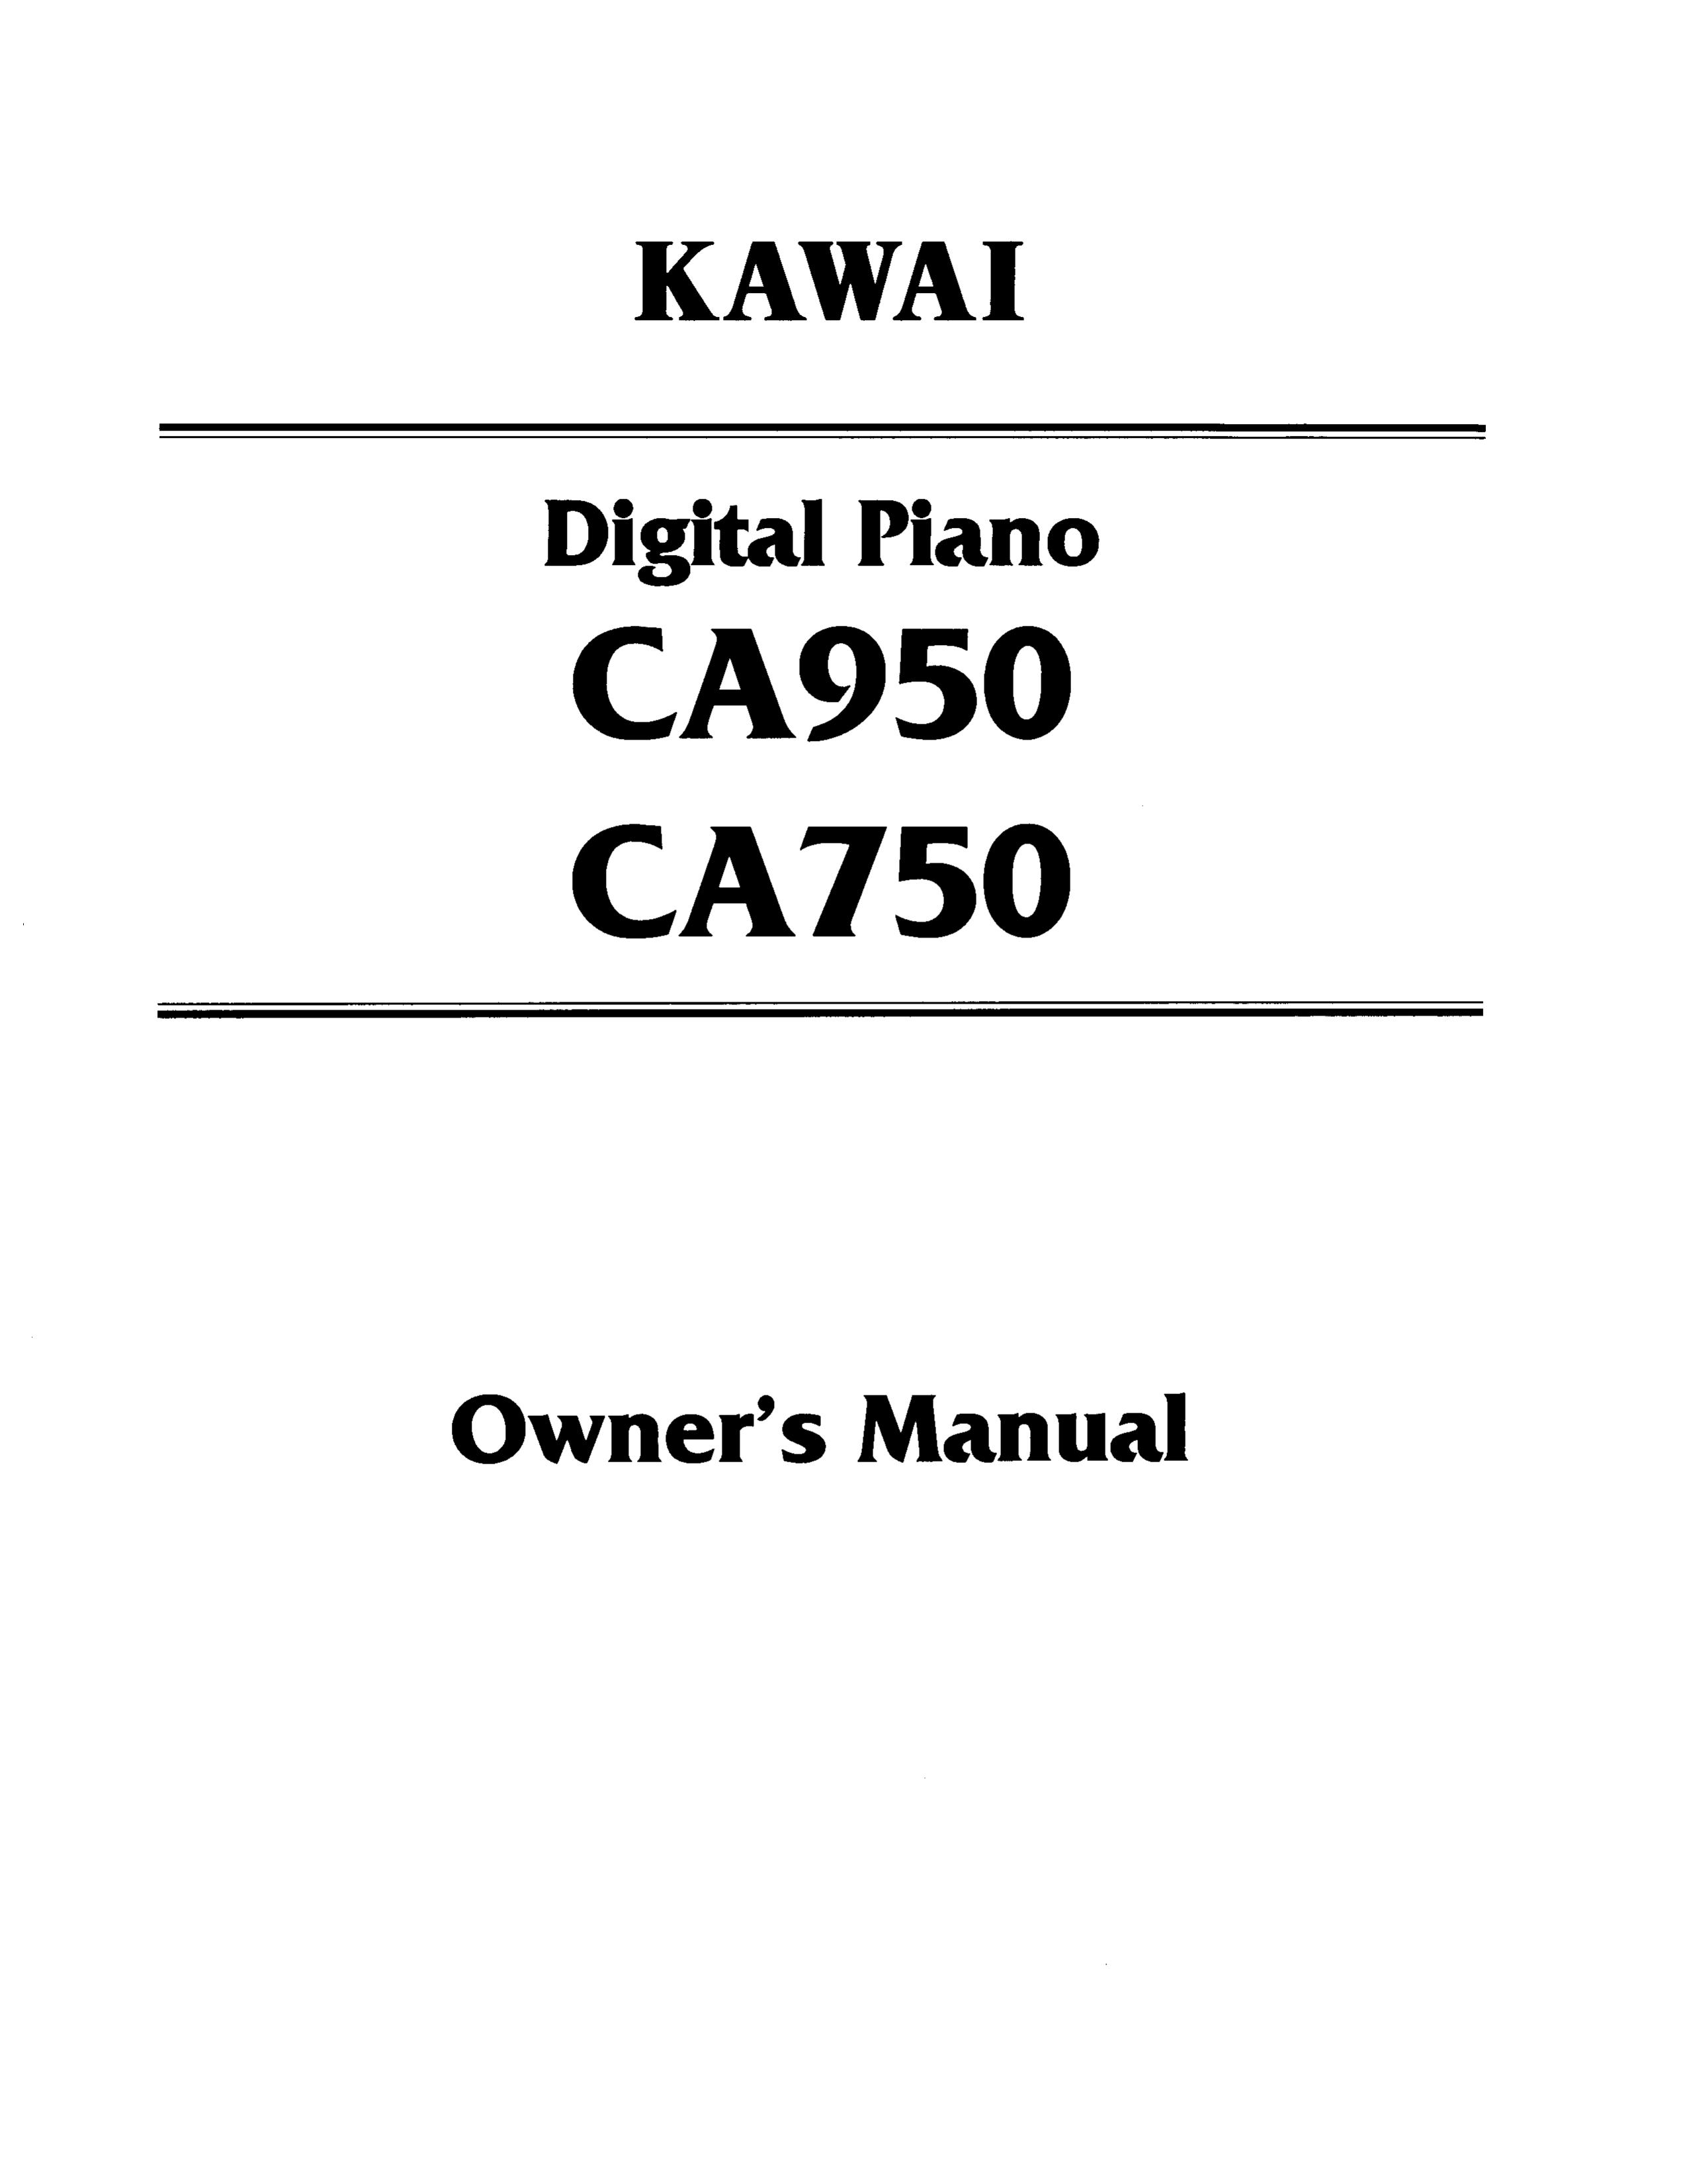 Kawai CA750 Electronic Keyboard User Manual